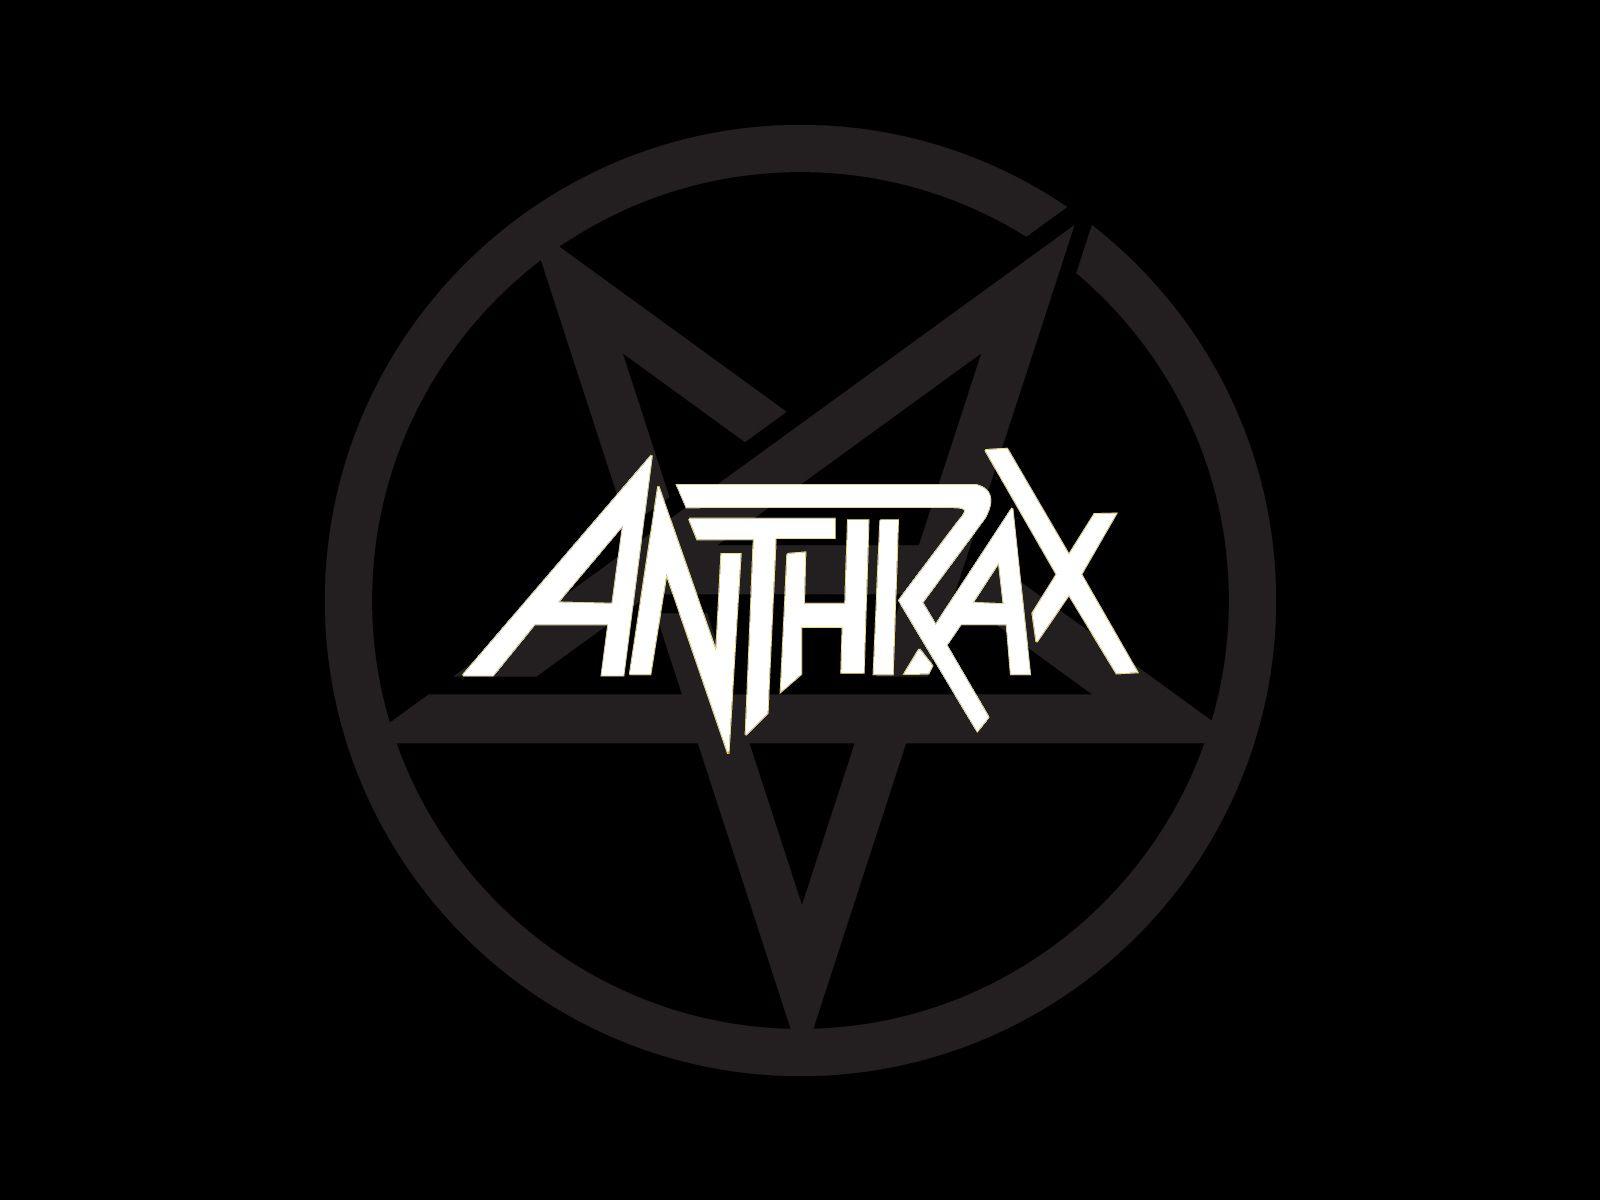 Anthrax logo and Anthrax wallpaper. Band logos band logos, metal bands logos, punk bands logos